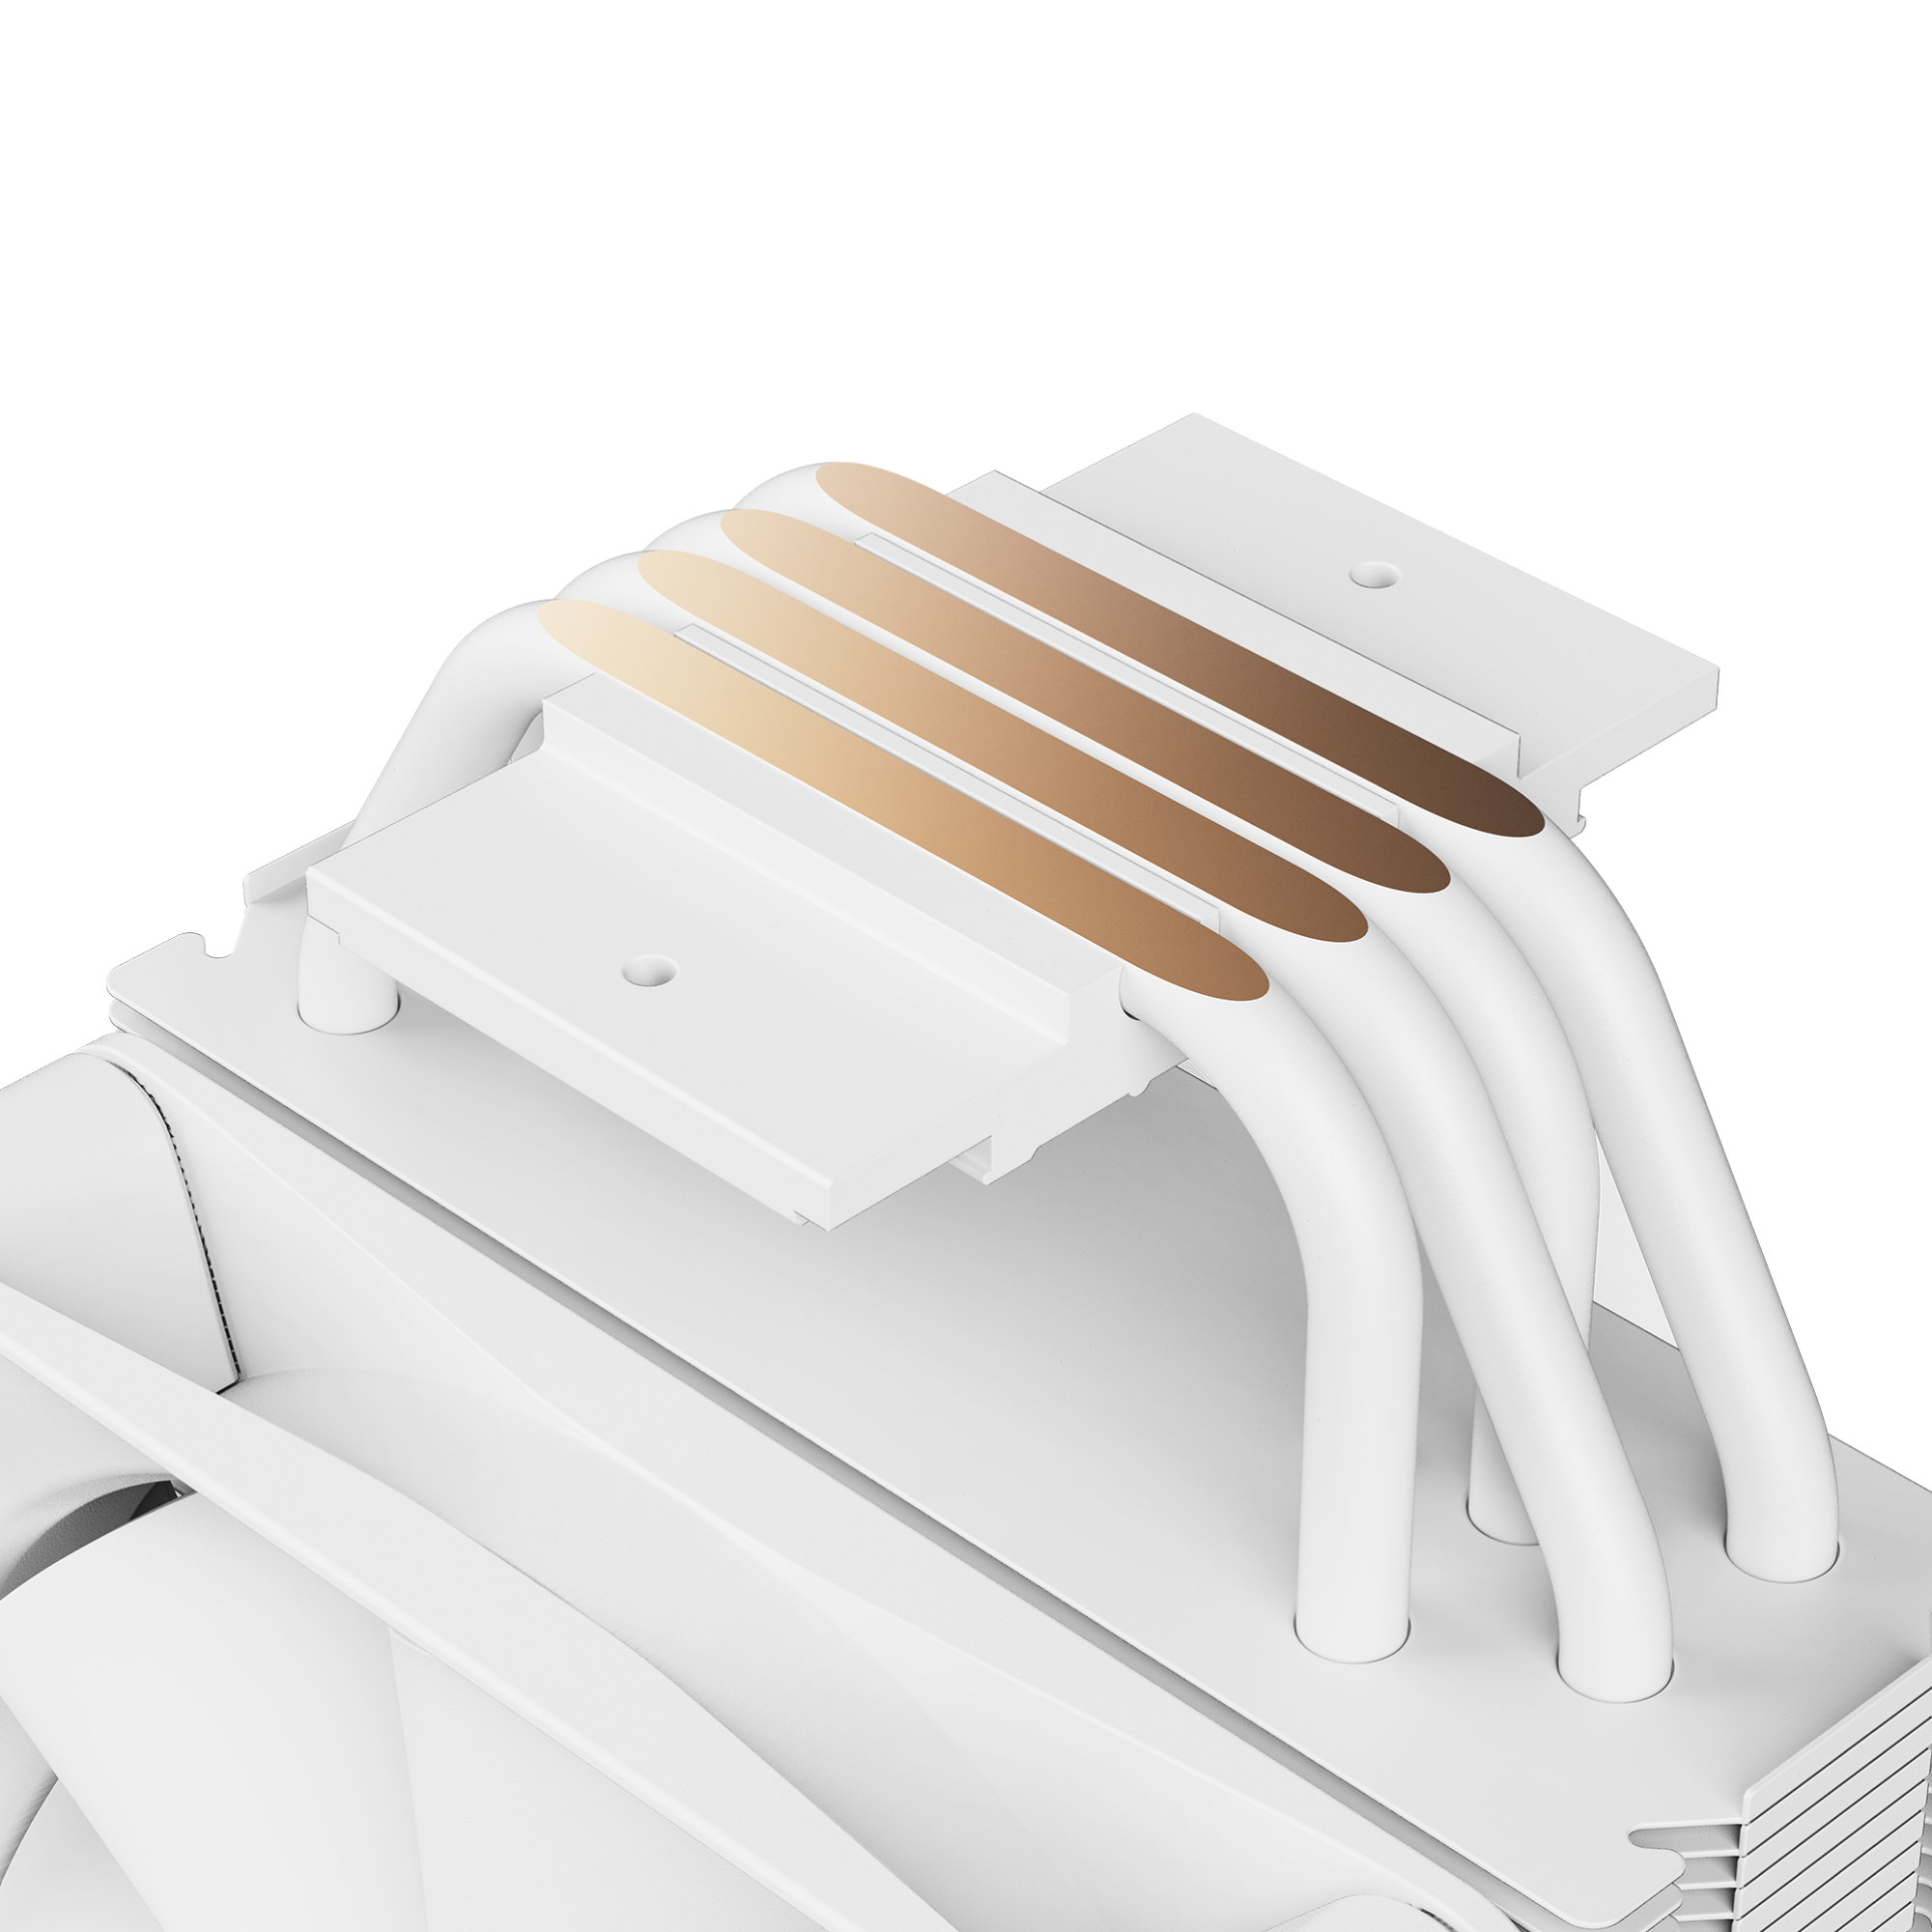 NZXT T120 RGB blanc - RC-TR120-W1 - Ventirad - Caloducs en cuivre  conducteurs - Paliers hydrodynamiques - Compatible AMD et Intel :  : Informatique